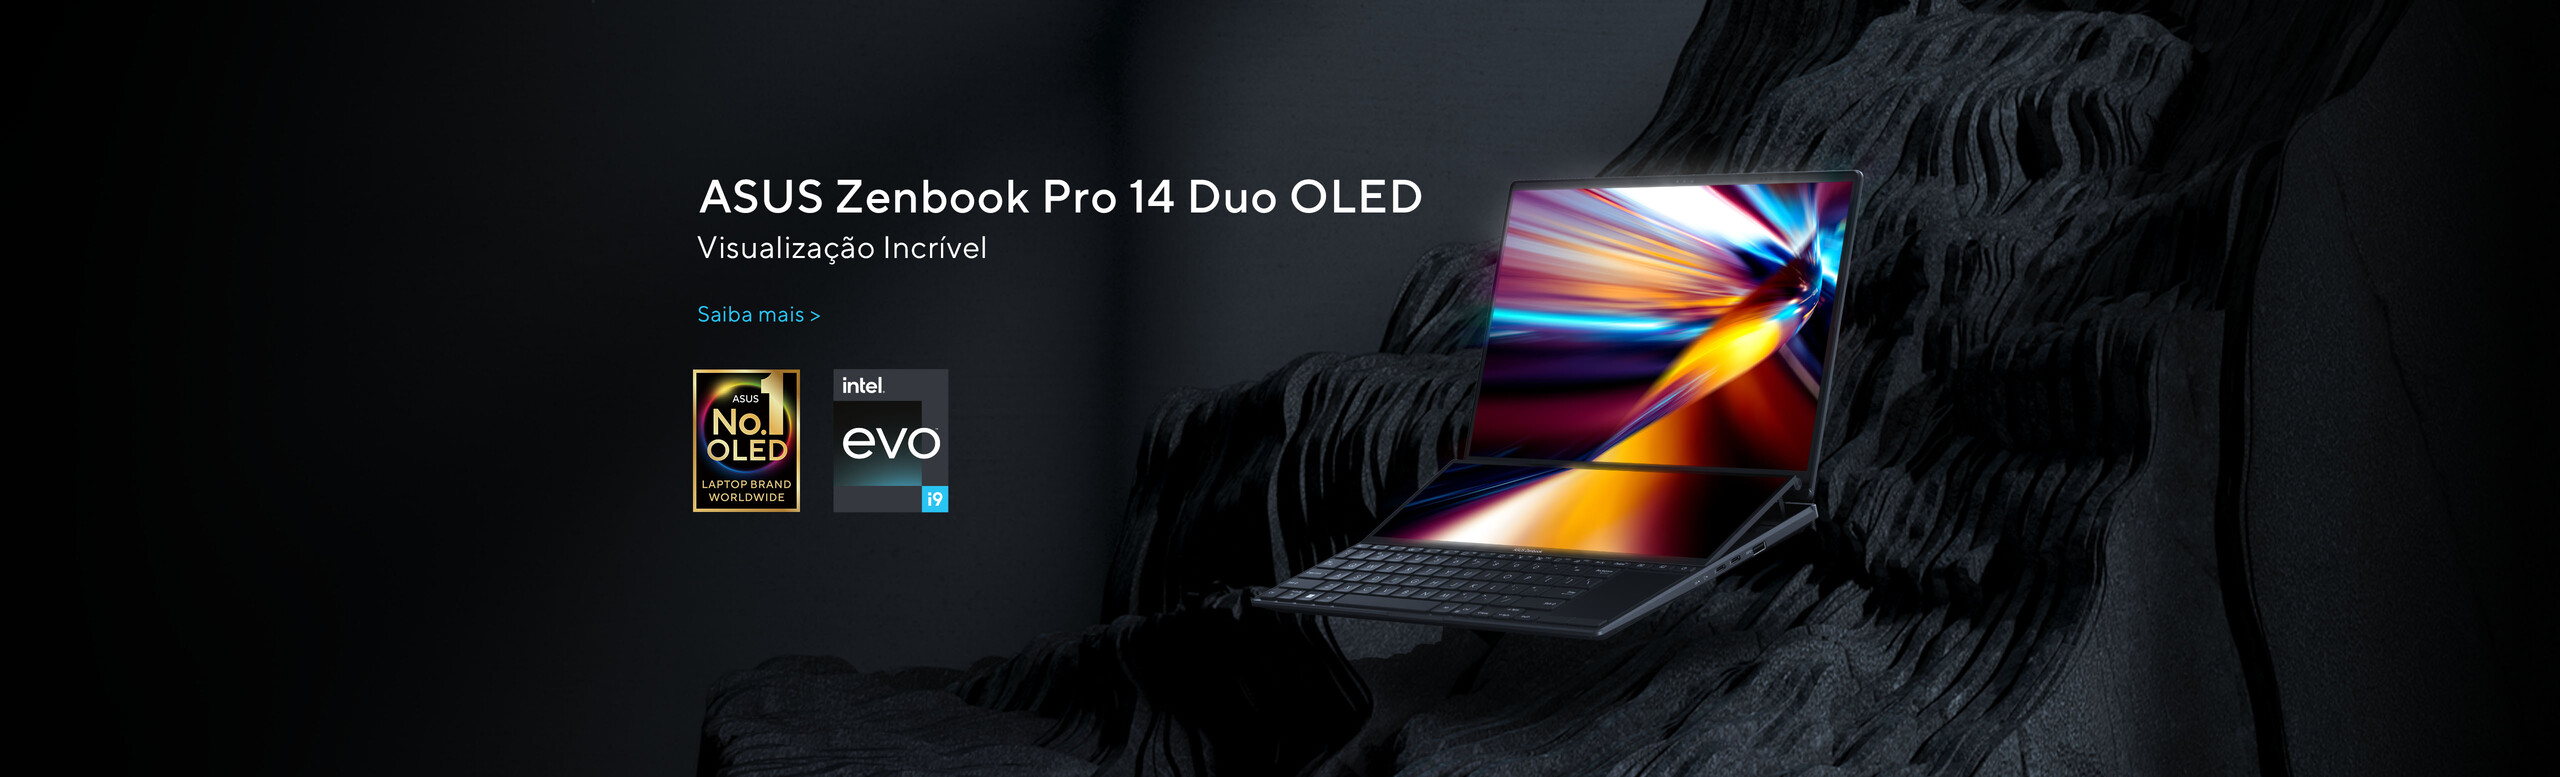 Zenbook Pro 14 Duo OLED (UX8402)